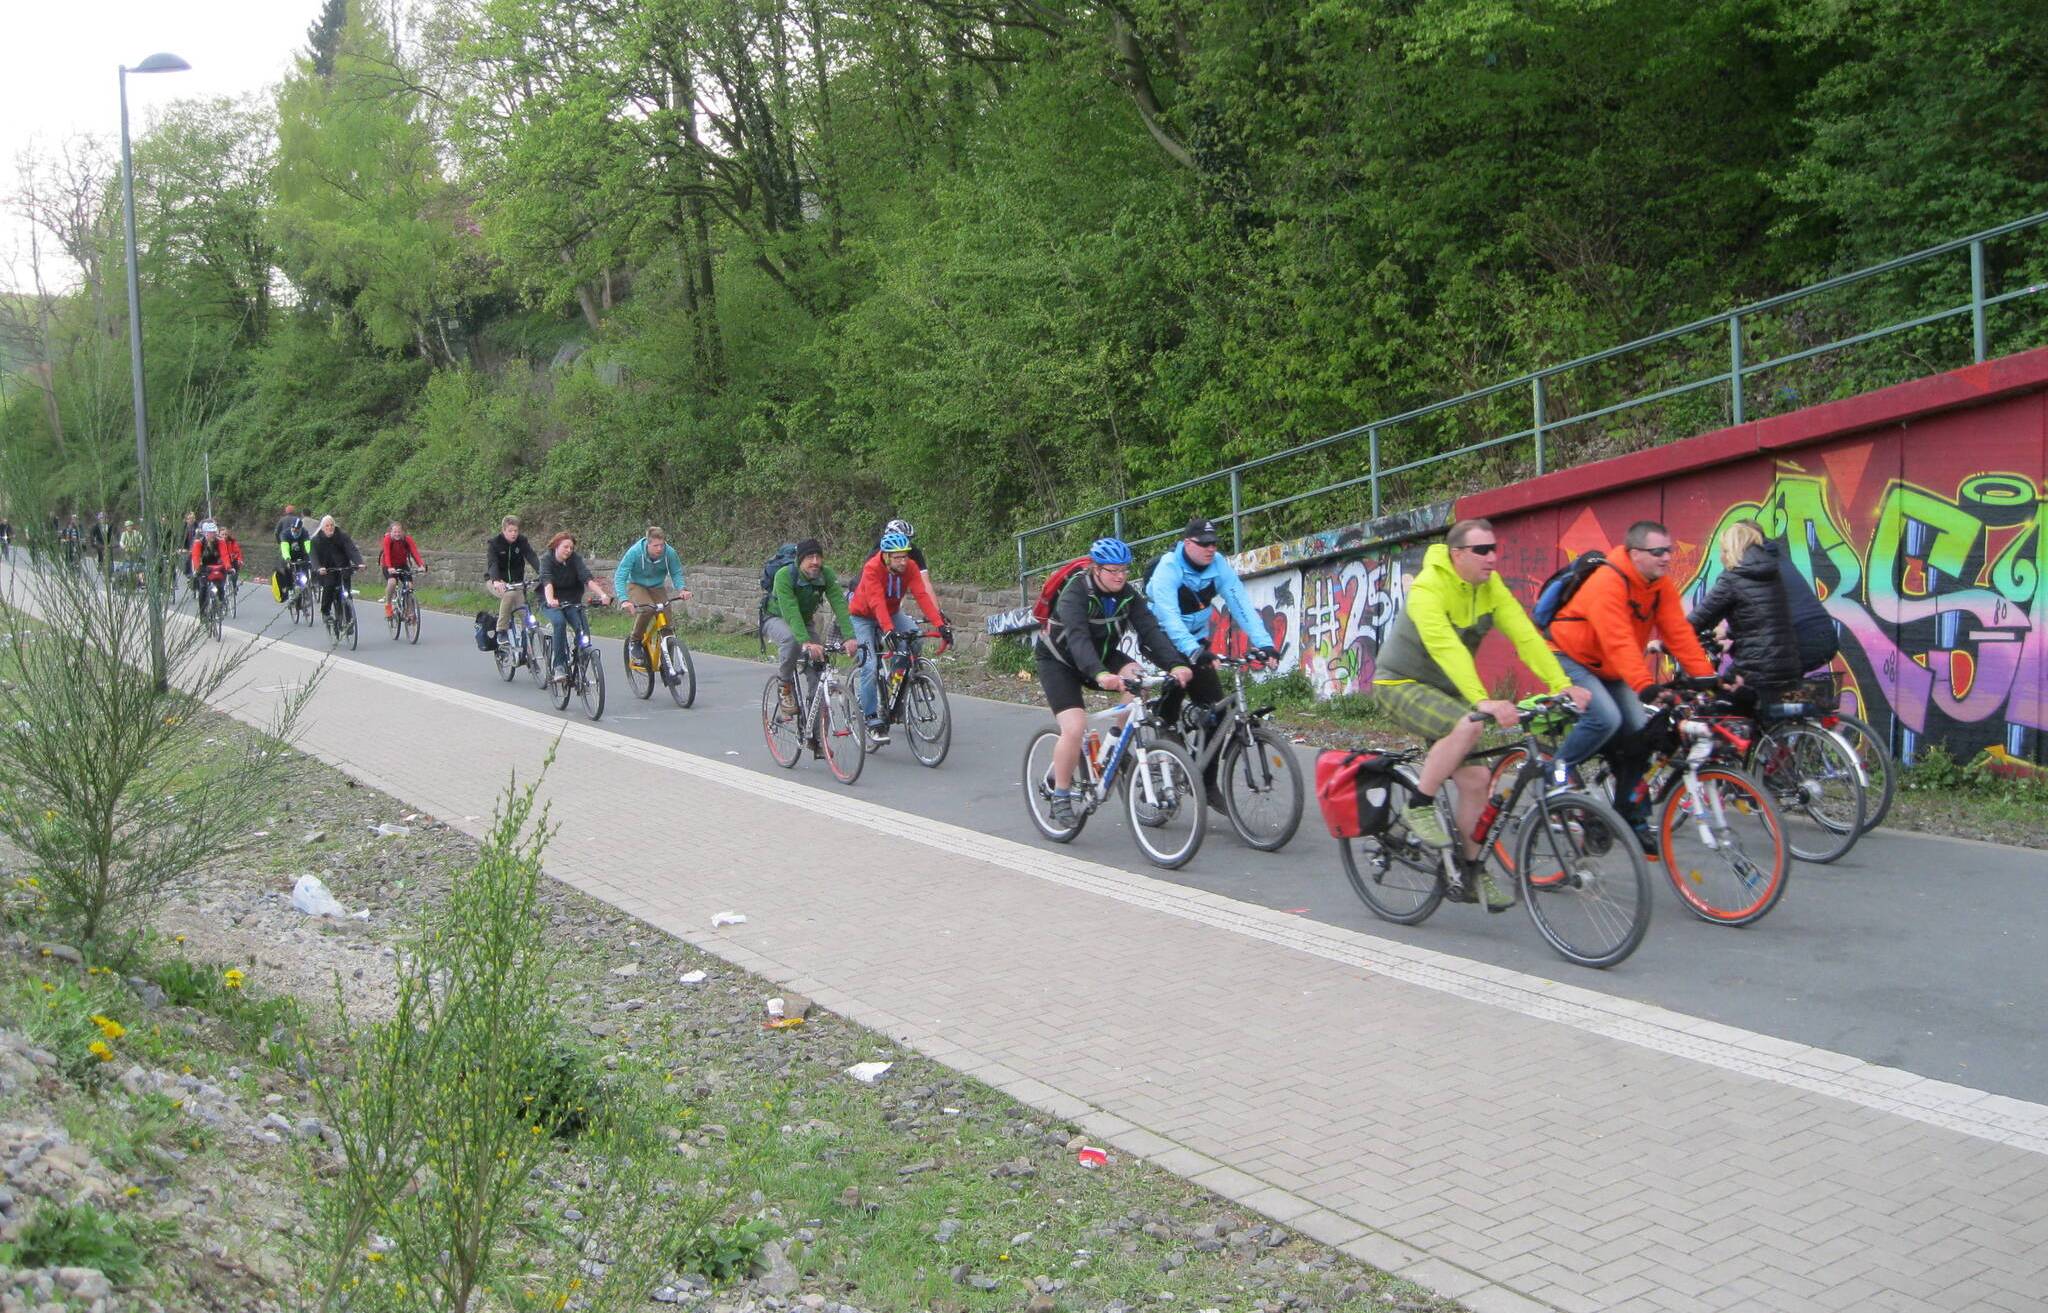  Bis Wuppertals Radfahrer auch in der ganzen Stadt schnell und alltagskompatibel unterwegs sein können, werden noch viel Zeit und vor allem viel Geld erforderlich sein. 